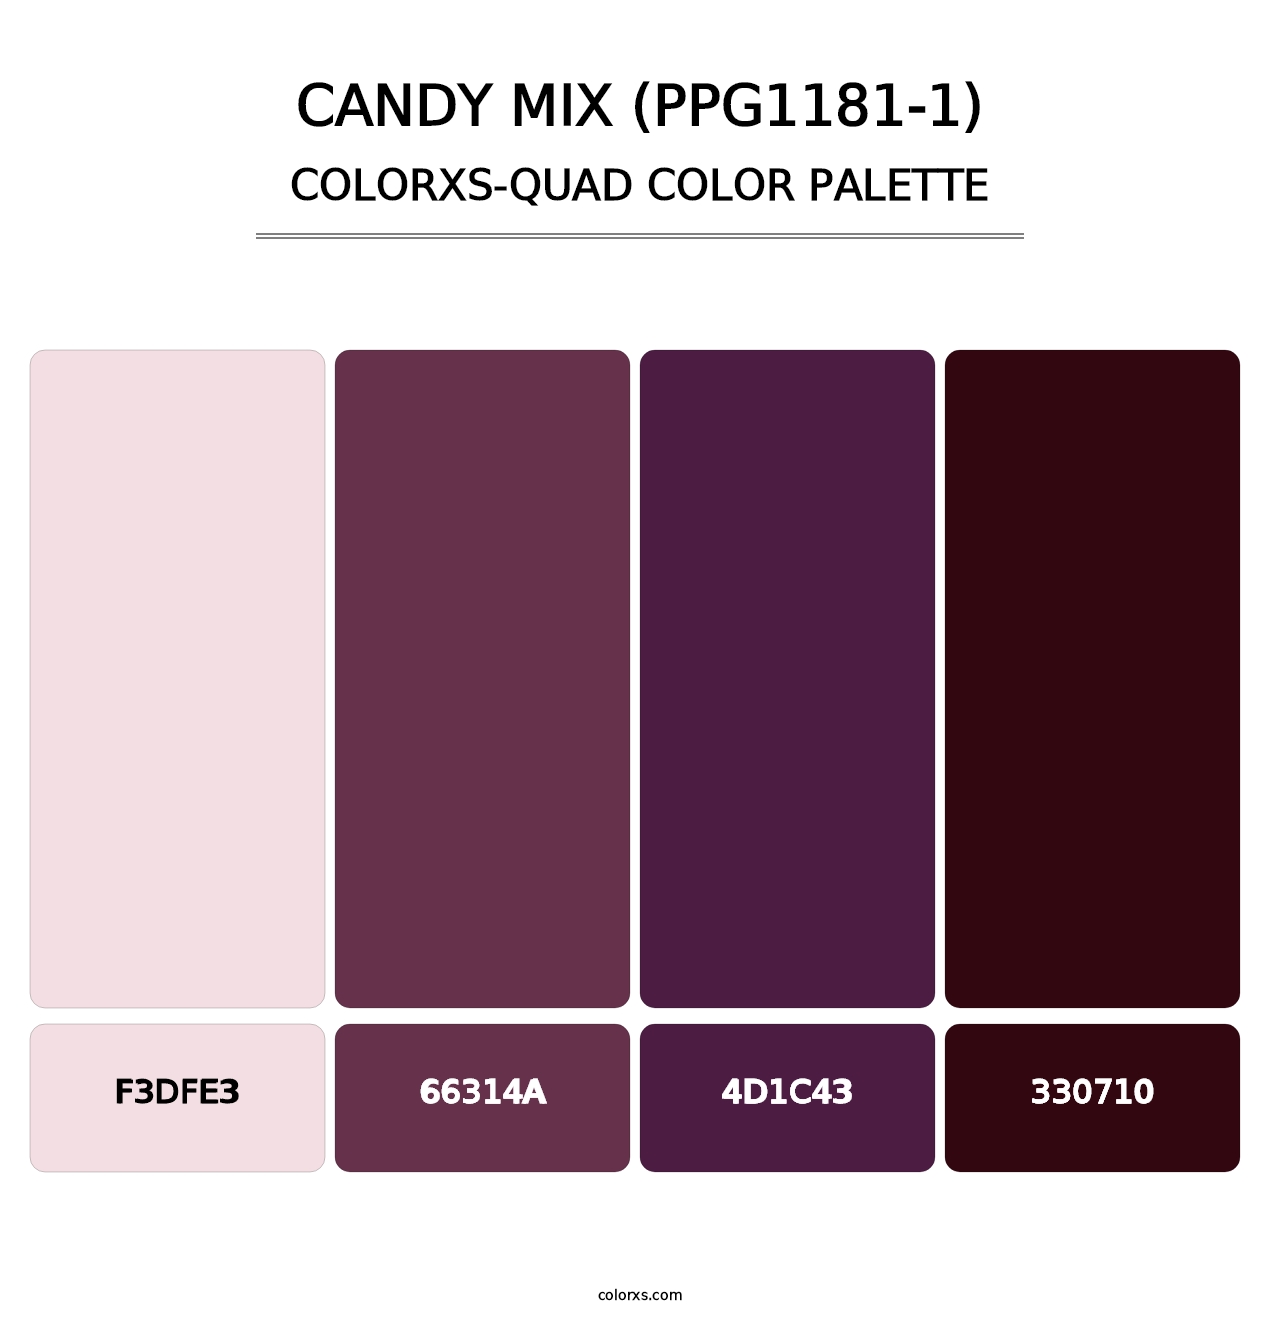 Candy Mix (PPG1181-1) - Colorxs Quad Palette